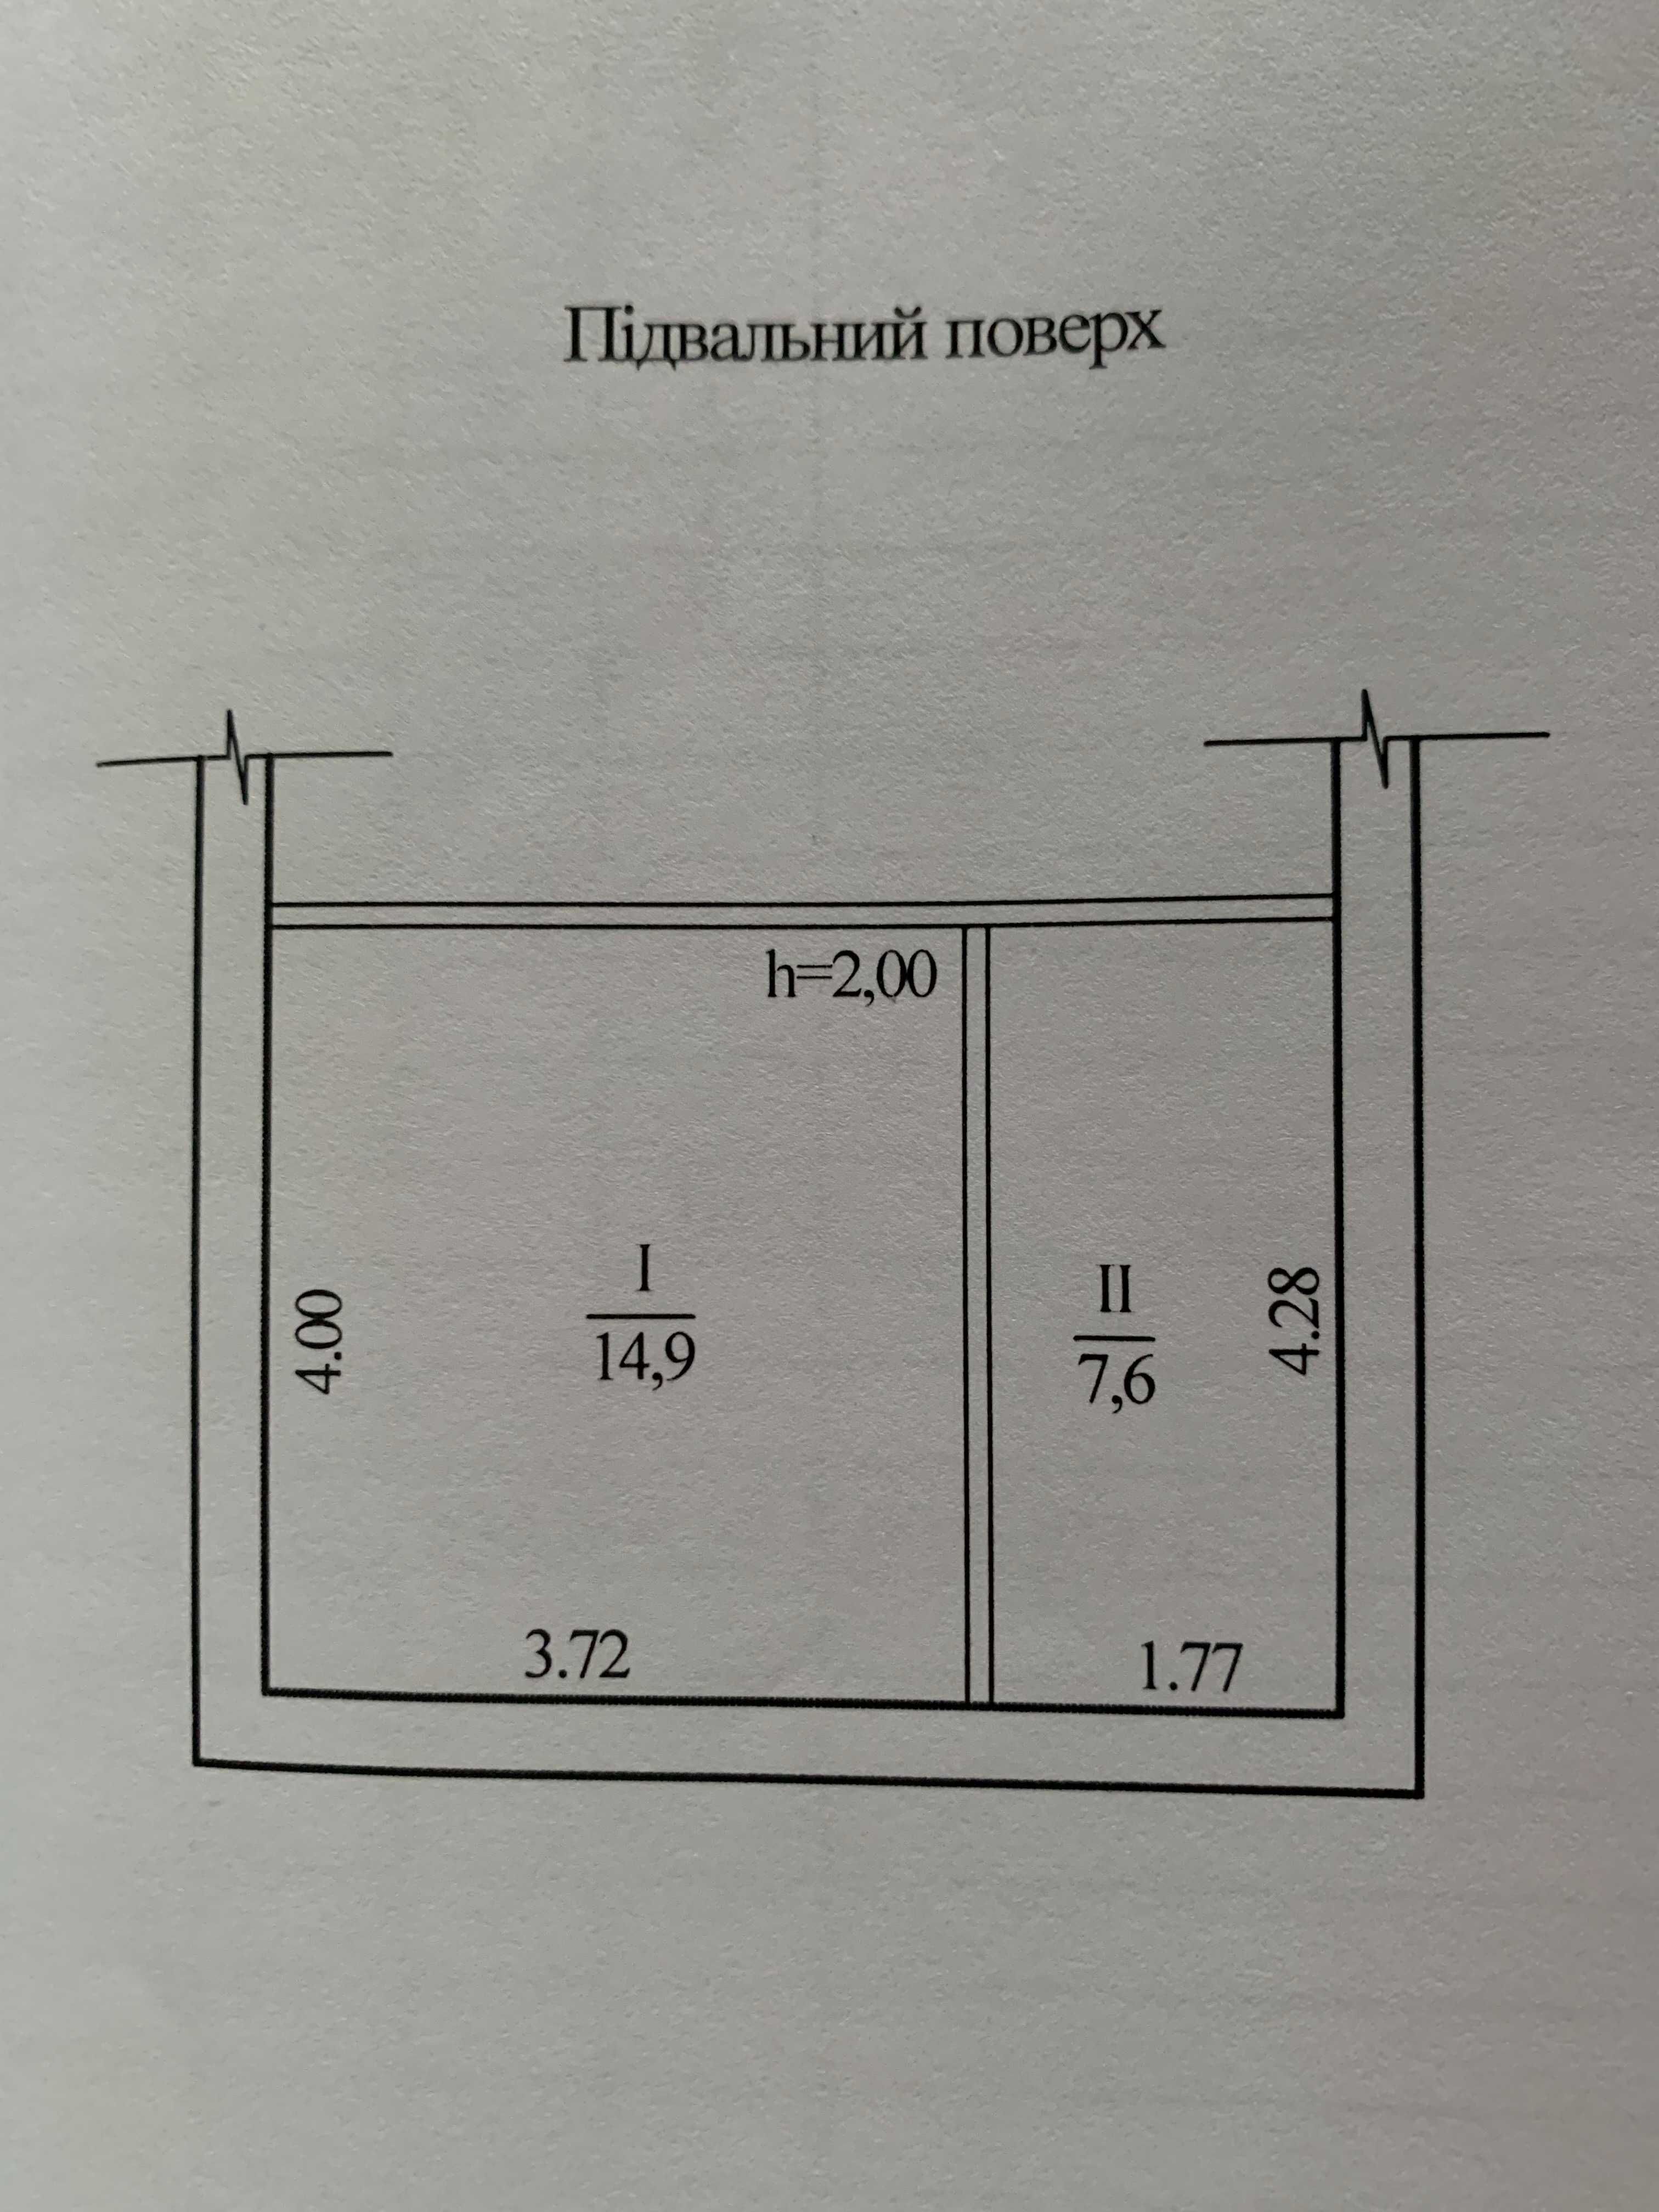 Продам 2-х этажный капитальный гараж  Тополь-1 пер.Джинчарадзе (обмен)